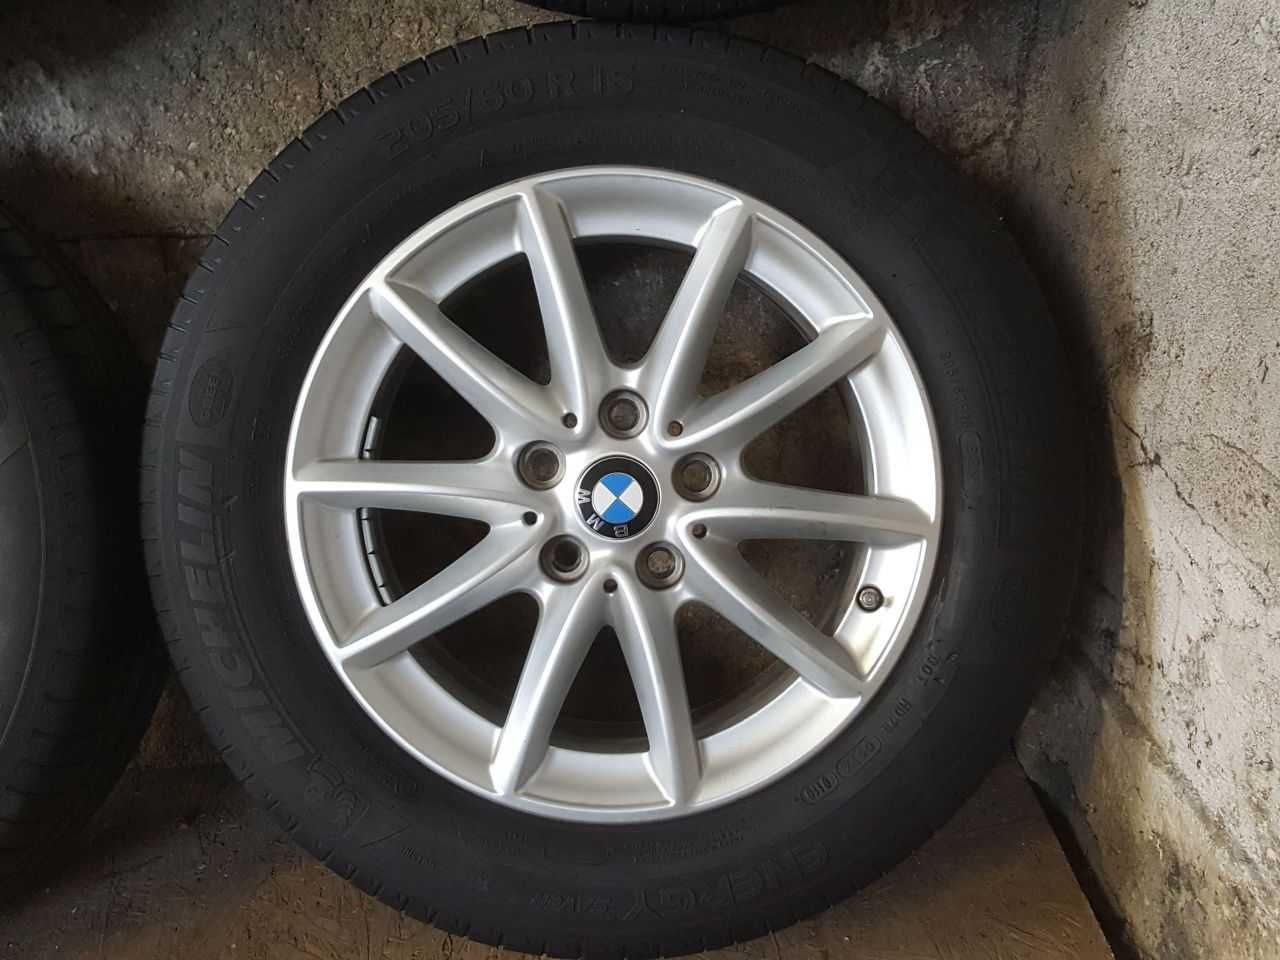 Felgi alu BMW VW Skoda R16 5x112 opony letnie 205/60R16 6,3mm Michelin